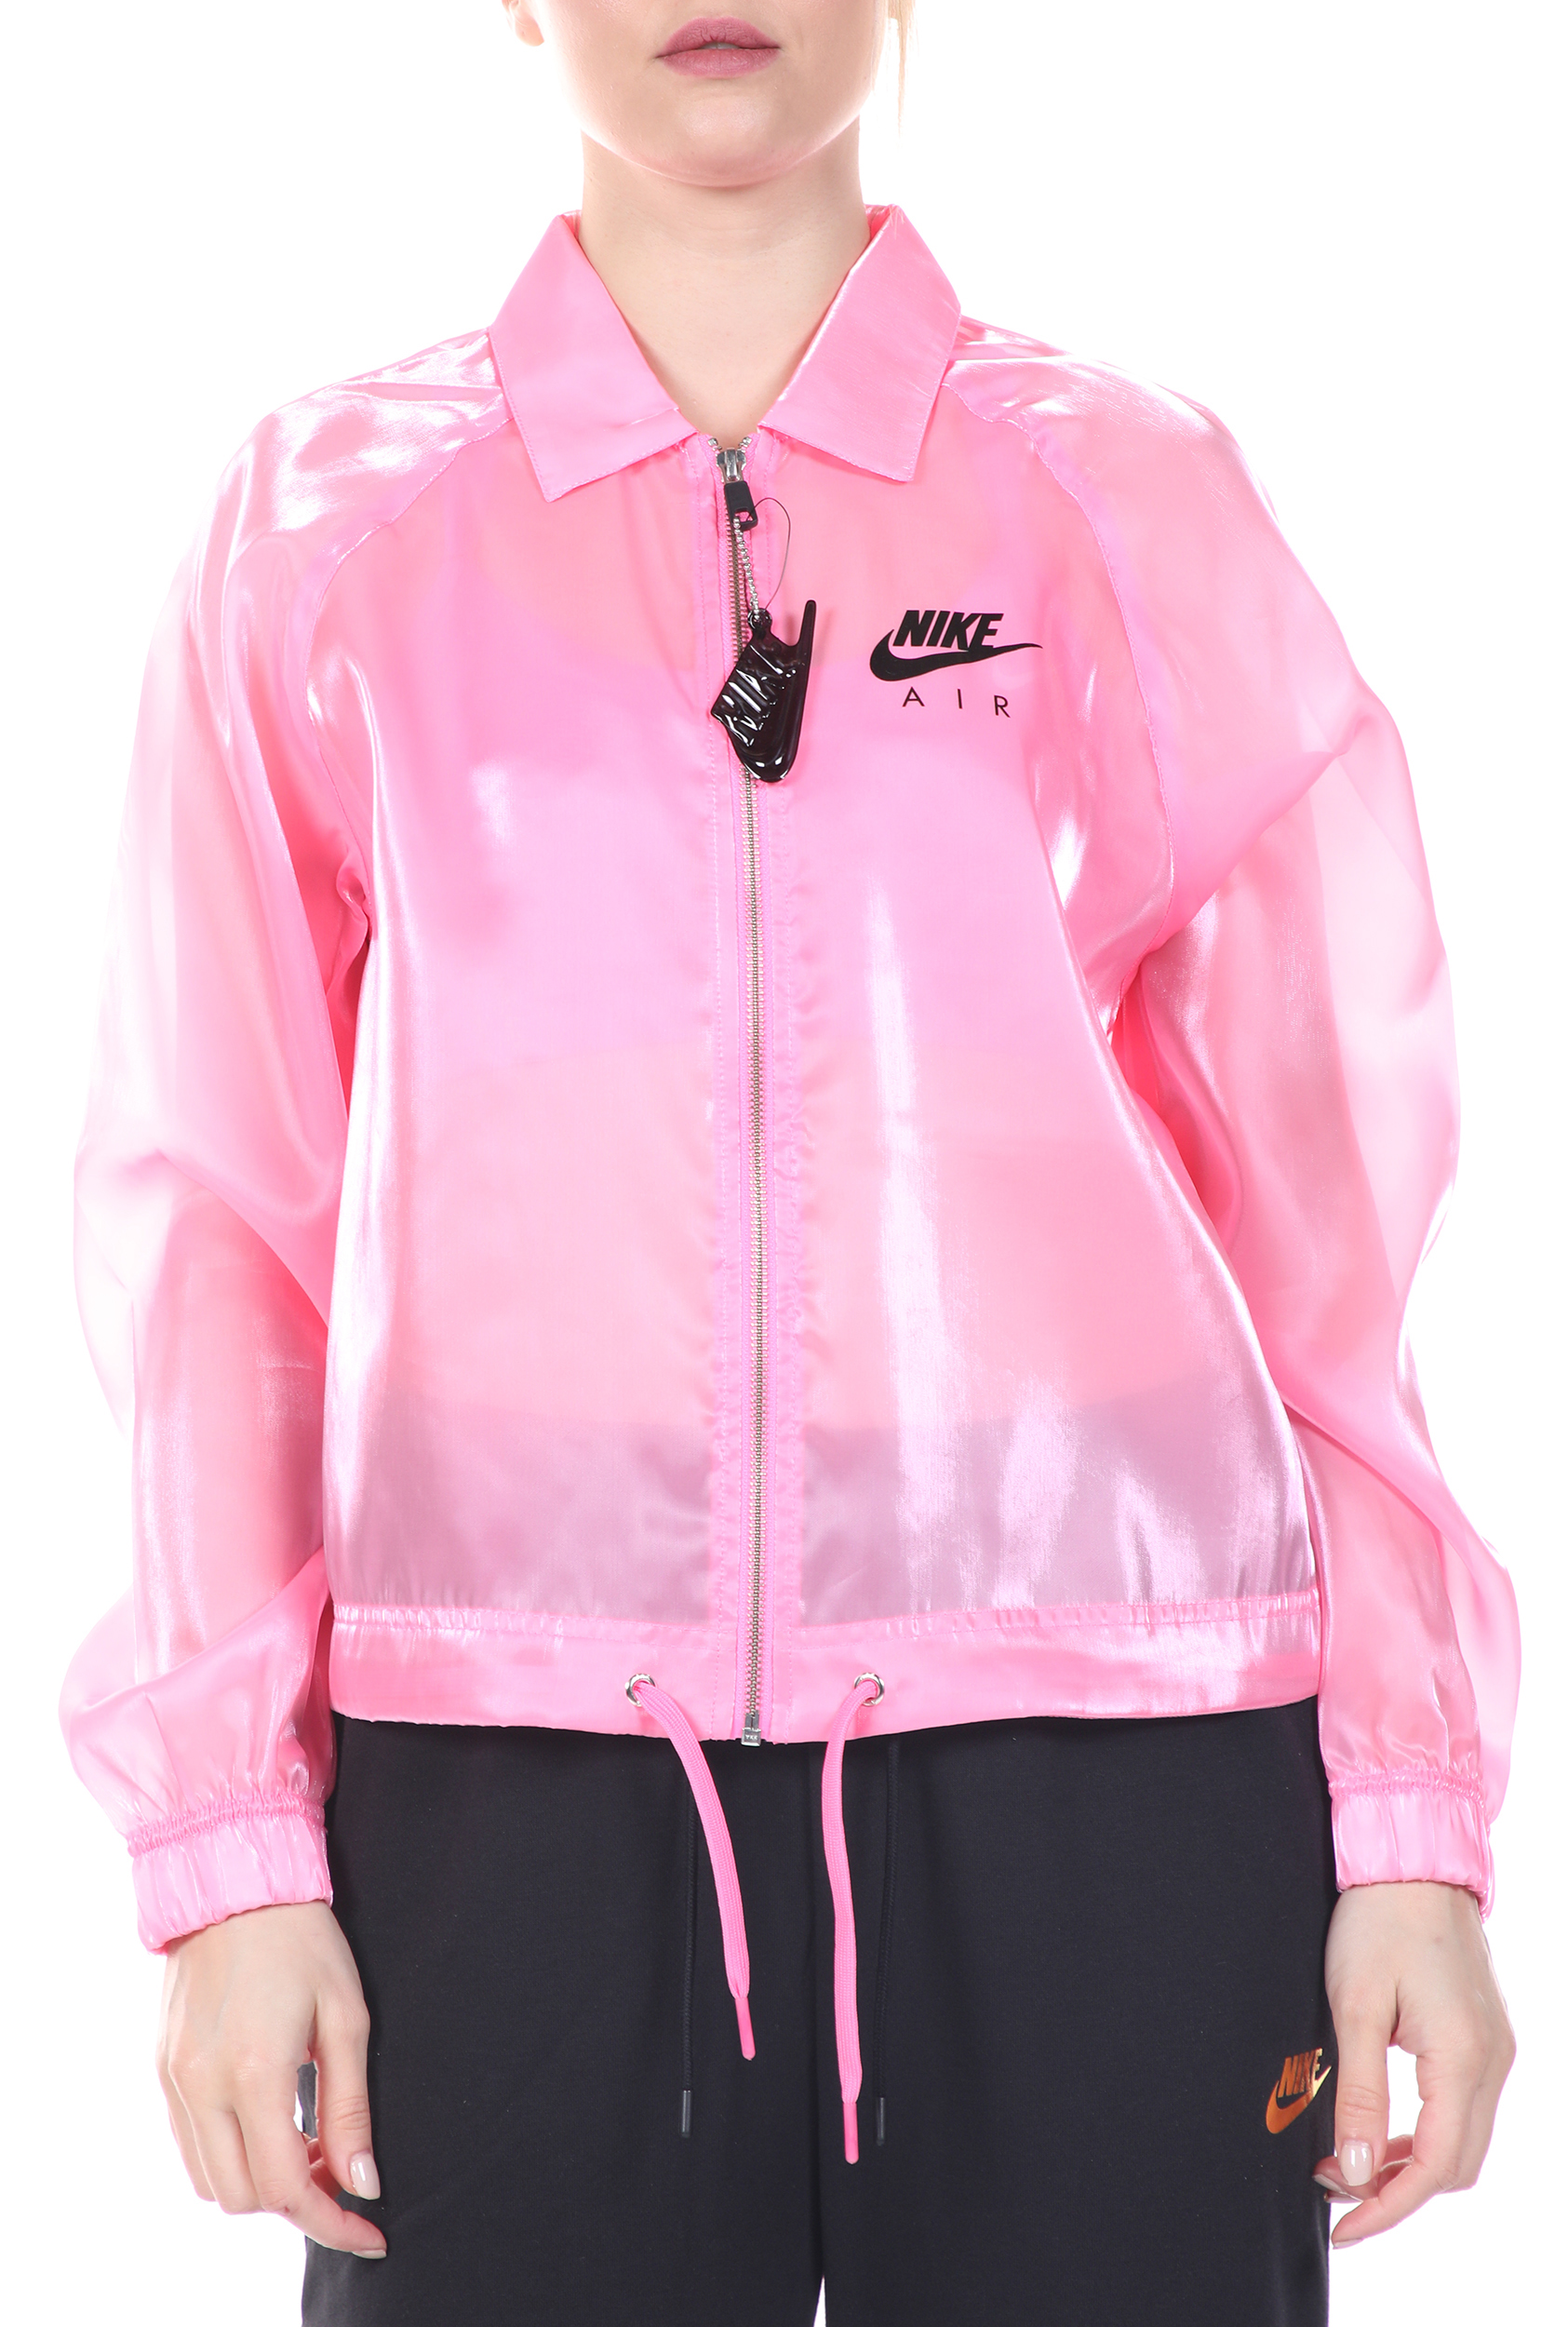 Γυναικεία/Ρούχα/Πανωφόρια/Μπουφάν NIKE - Γυναικείο jacket NIKE NSW AIR JKT SHEEN ροζ